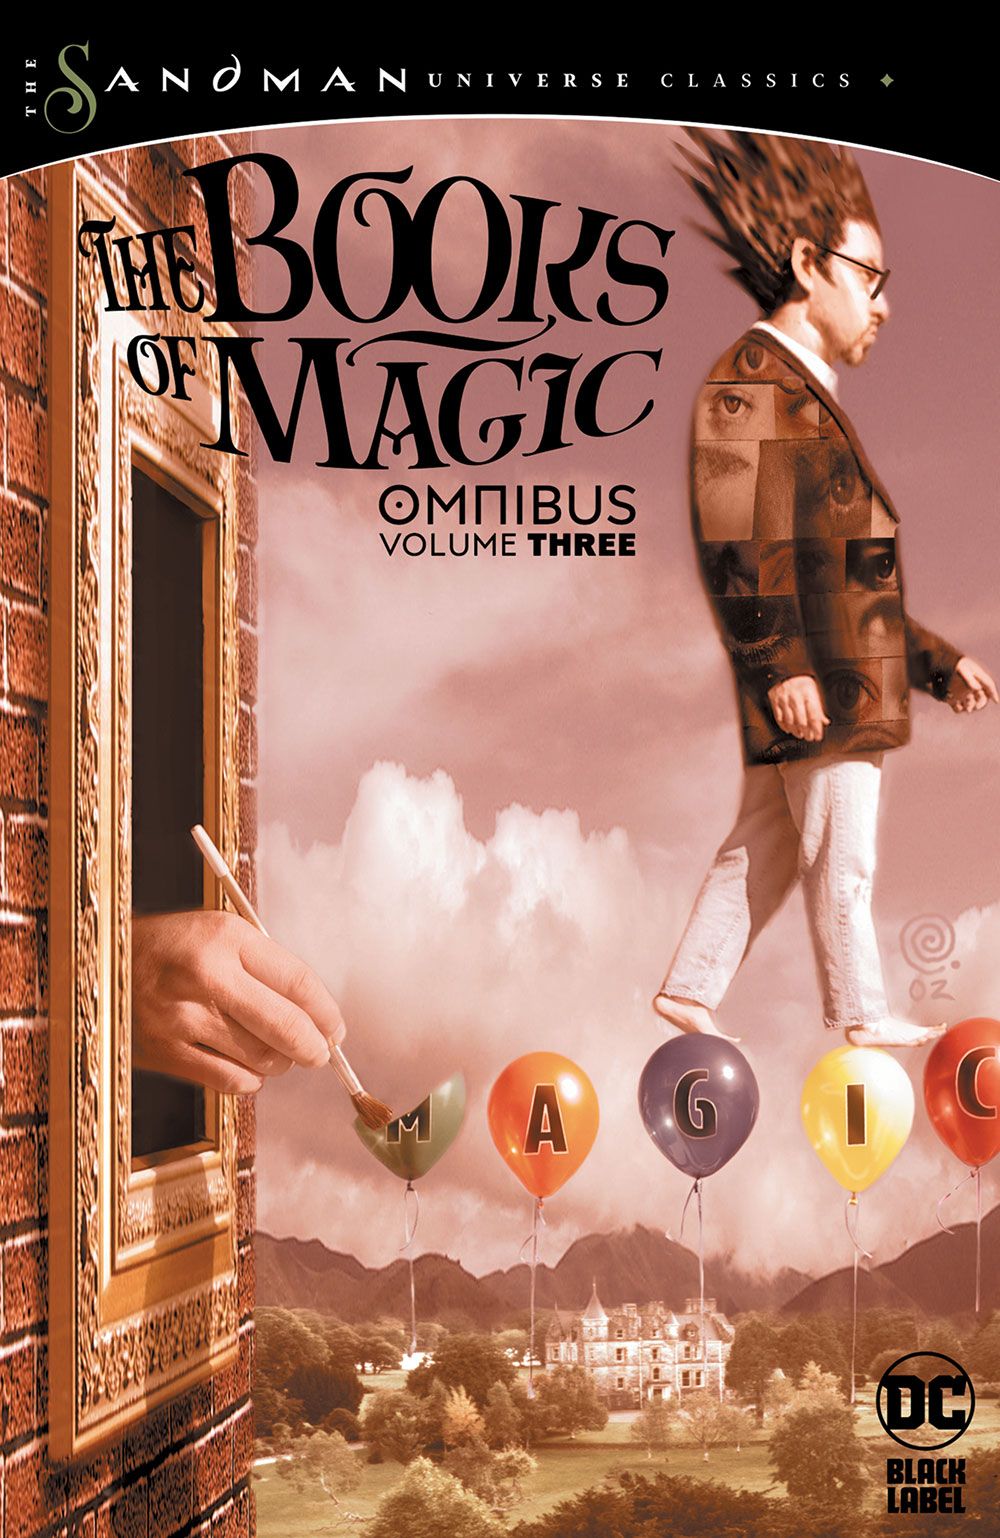 The-Books-of-Magic-Omnibus-Vol-3-(The-Sandman-Universe-Classics)